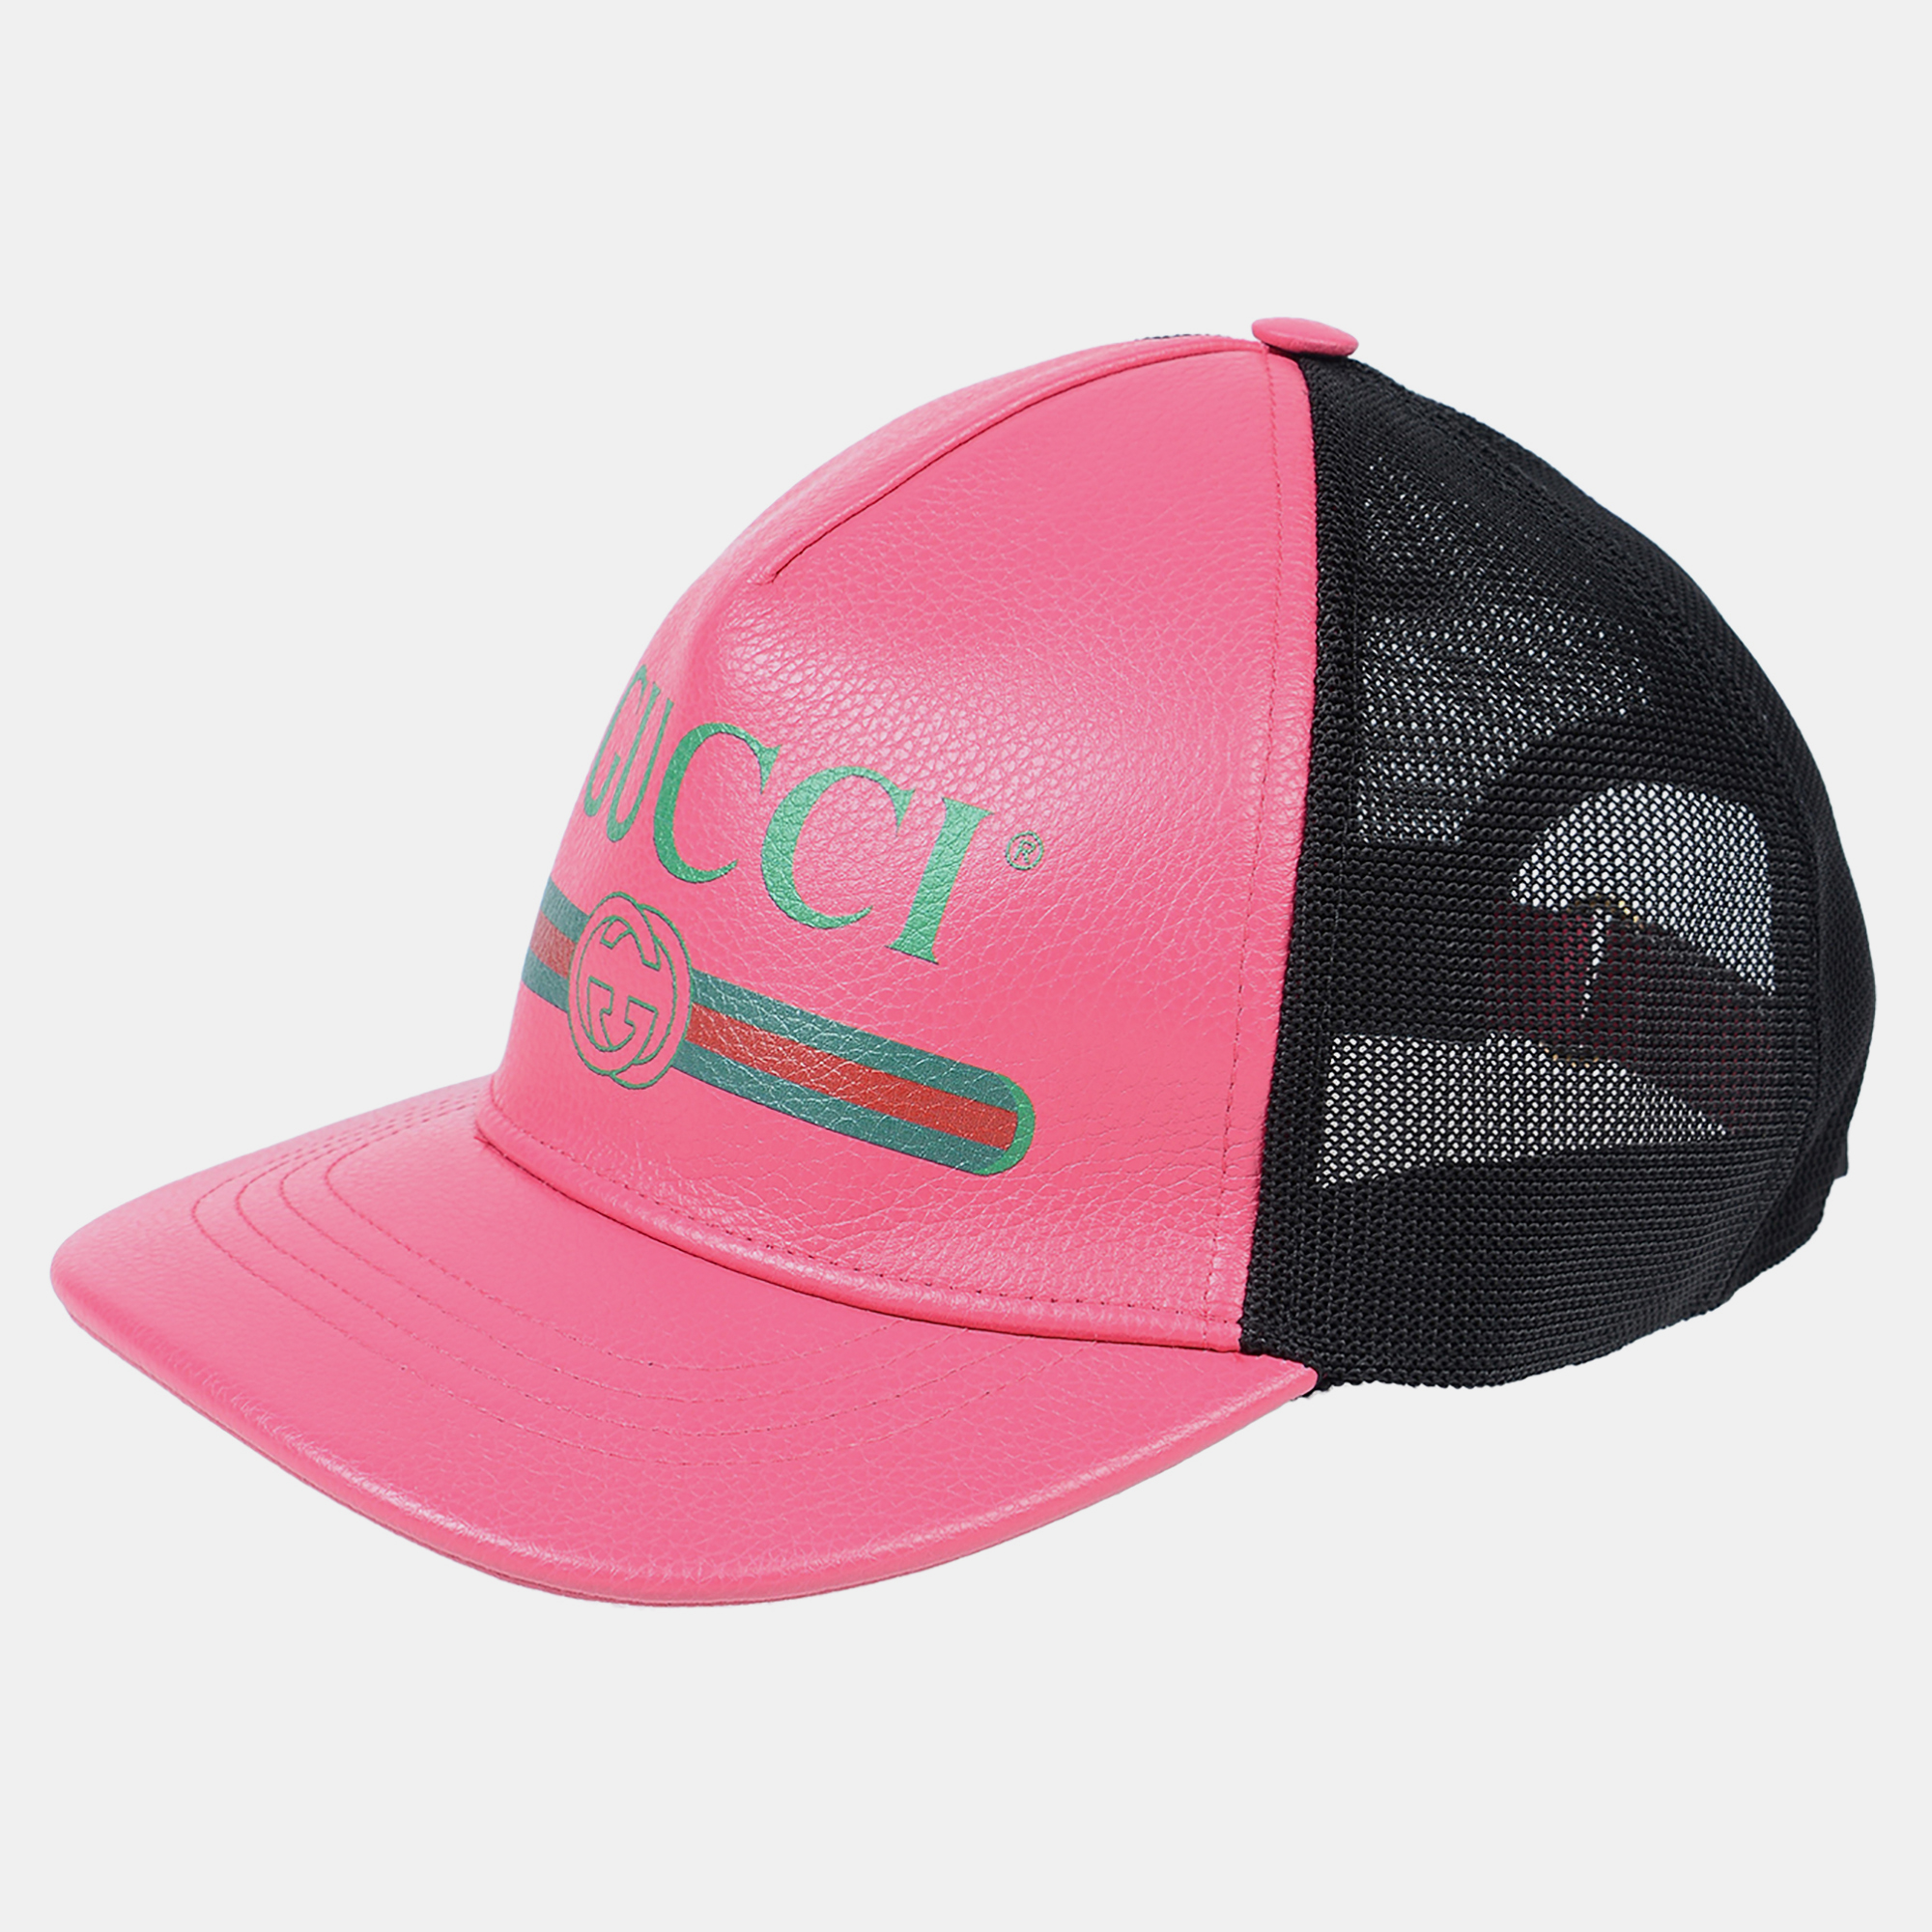 Gucci pink baseball hat m